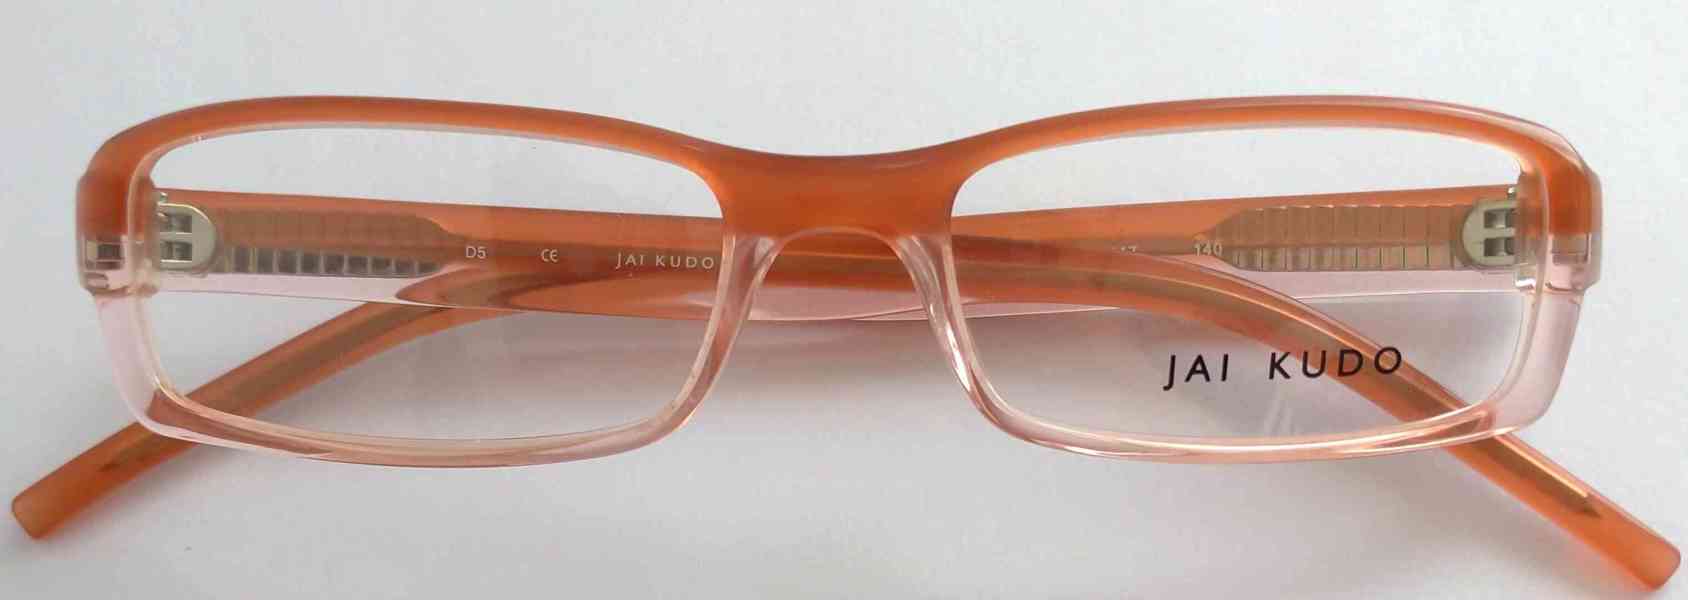 JAI KUDO 1716 P13 dámské brýlové obruby 50-17-140 MOC:2600Kč - foto 9